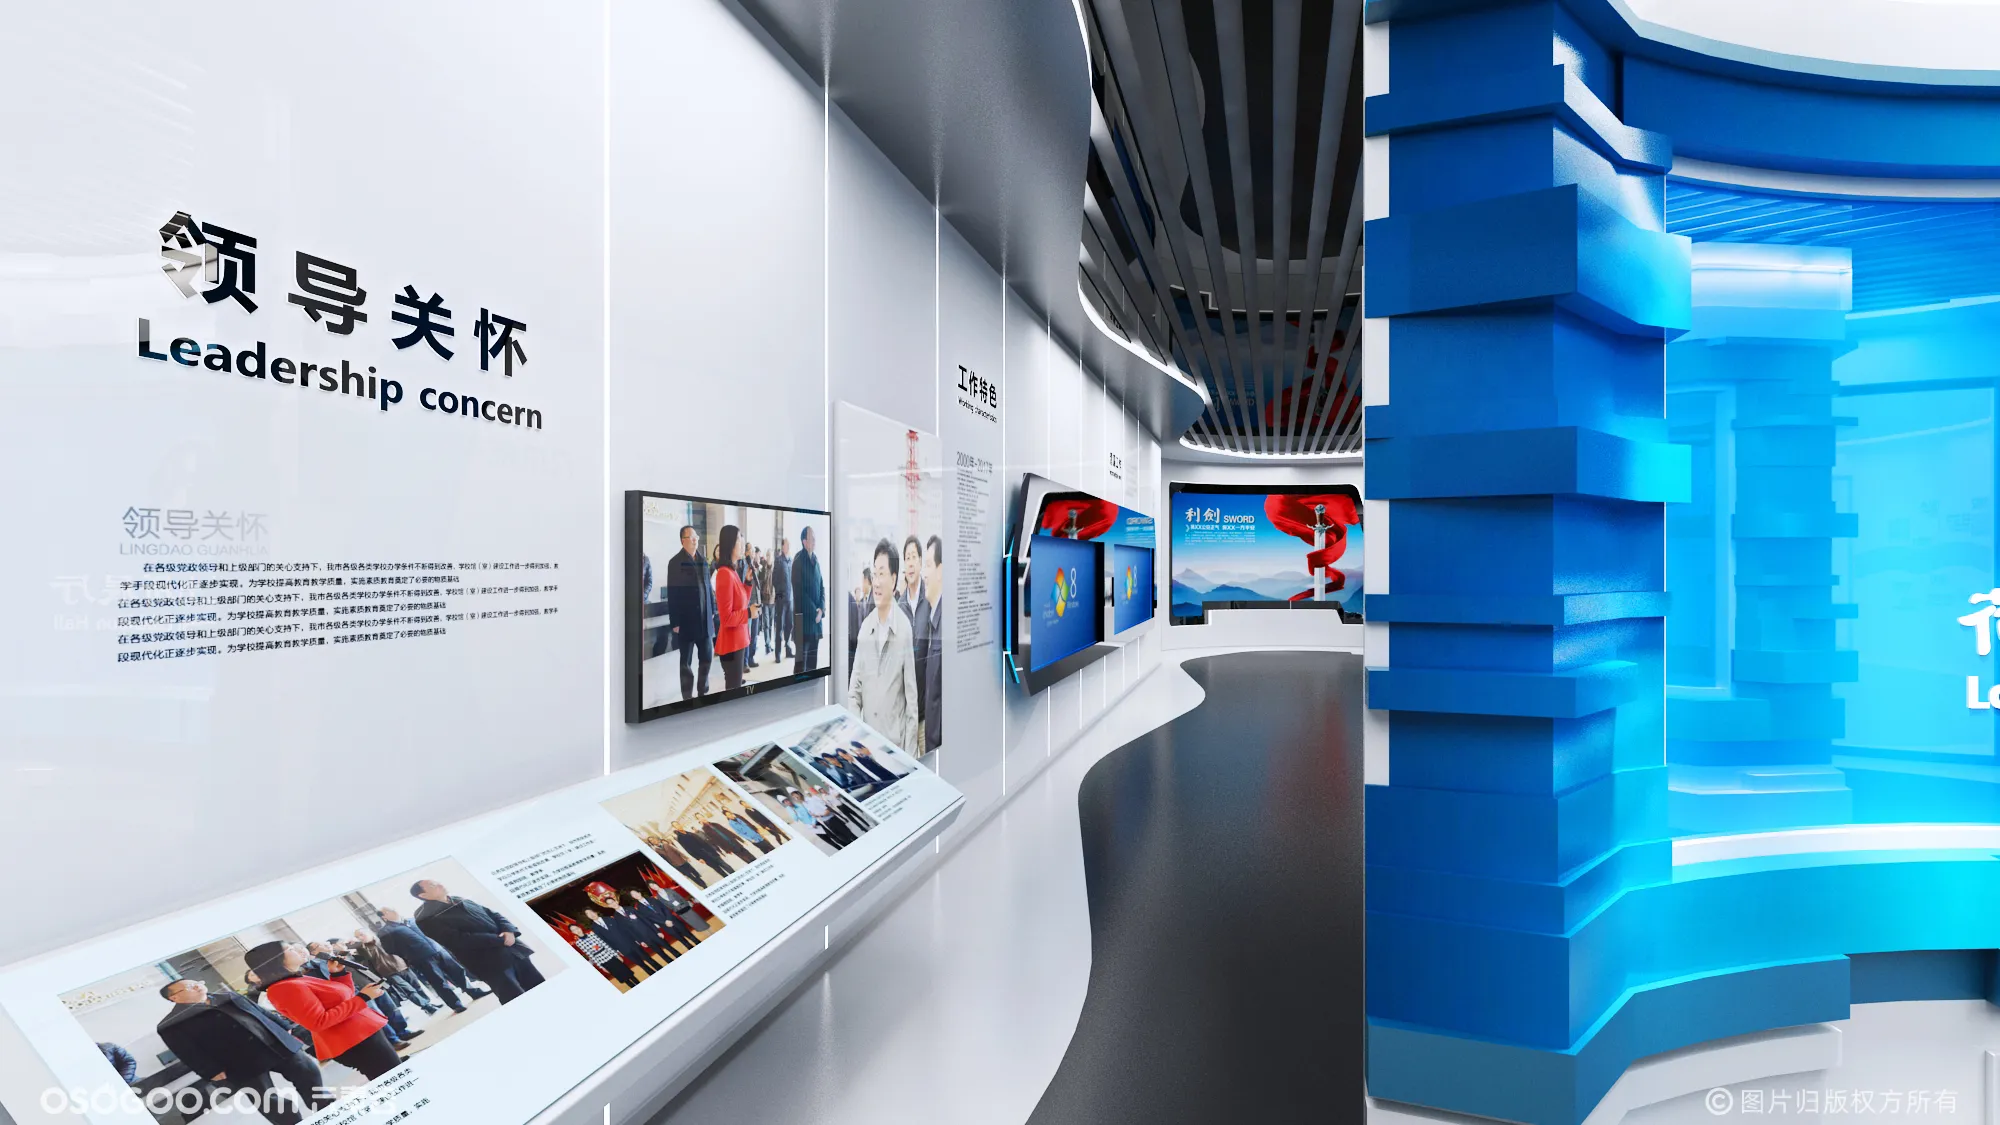 派出所展厅展馆文化墙荣誉室活动室3d效果图设计制作